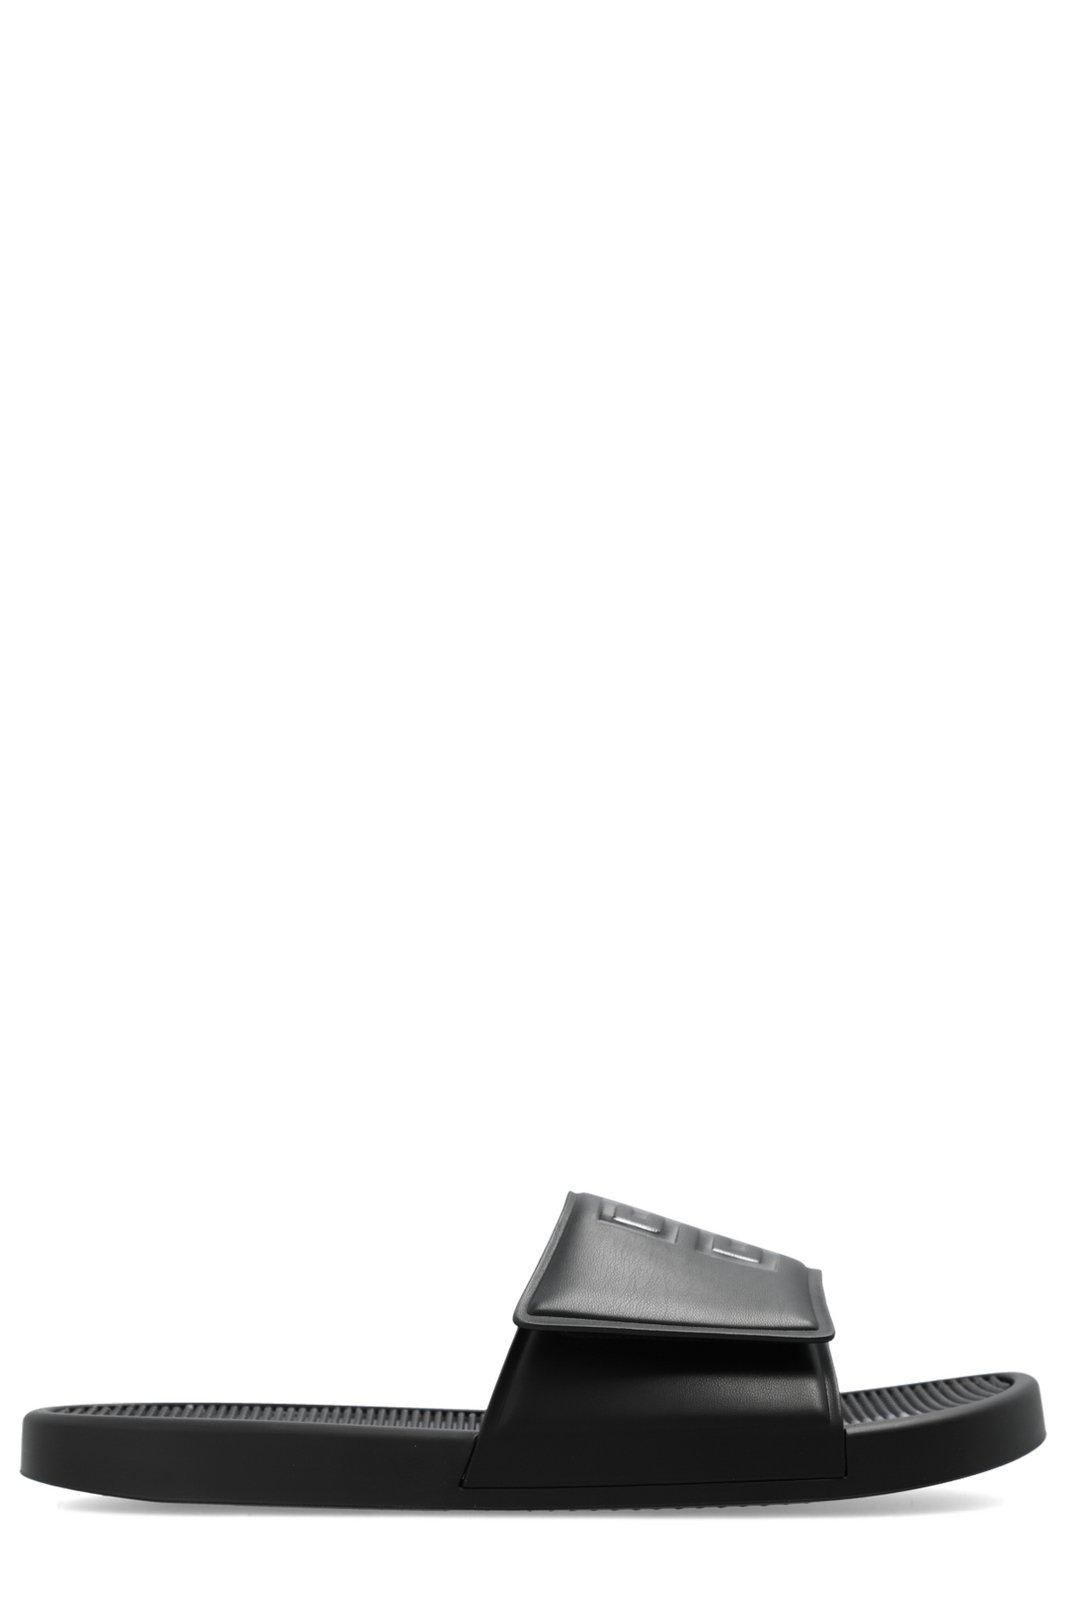 Shop Givenchy 4g Emblem Flat Sandals In Black/white